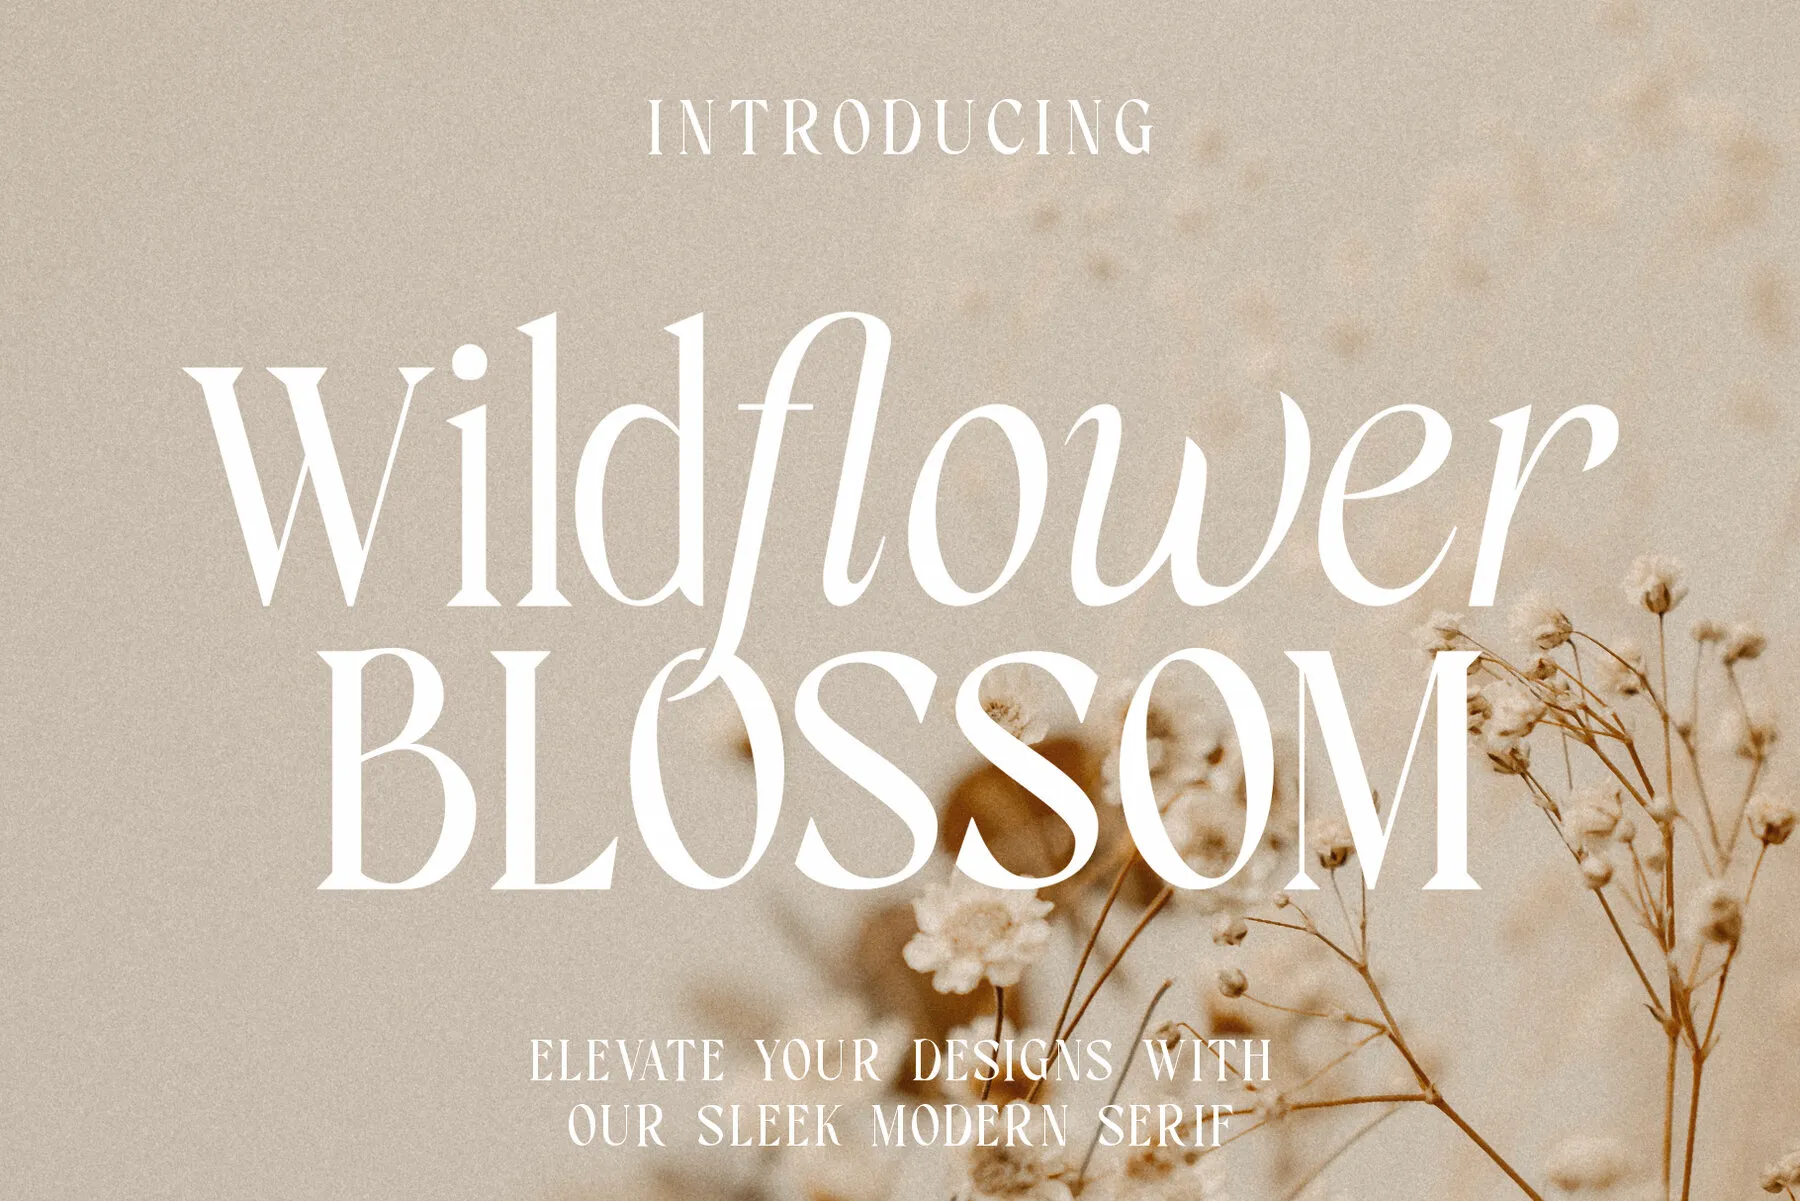 Wildflower Blossom